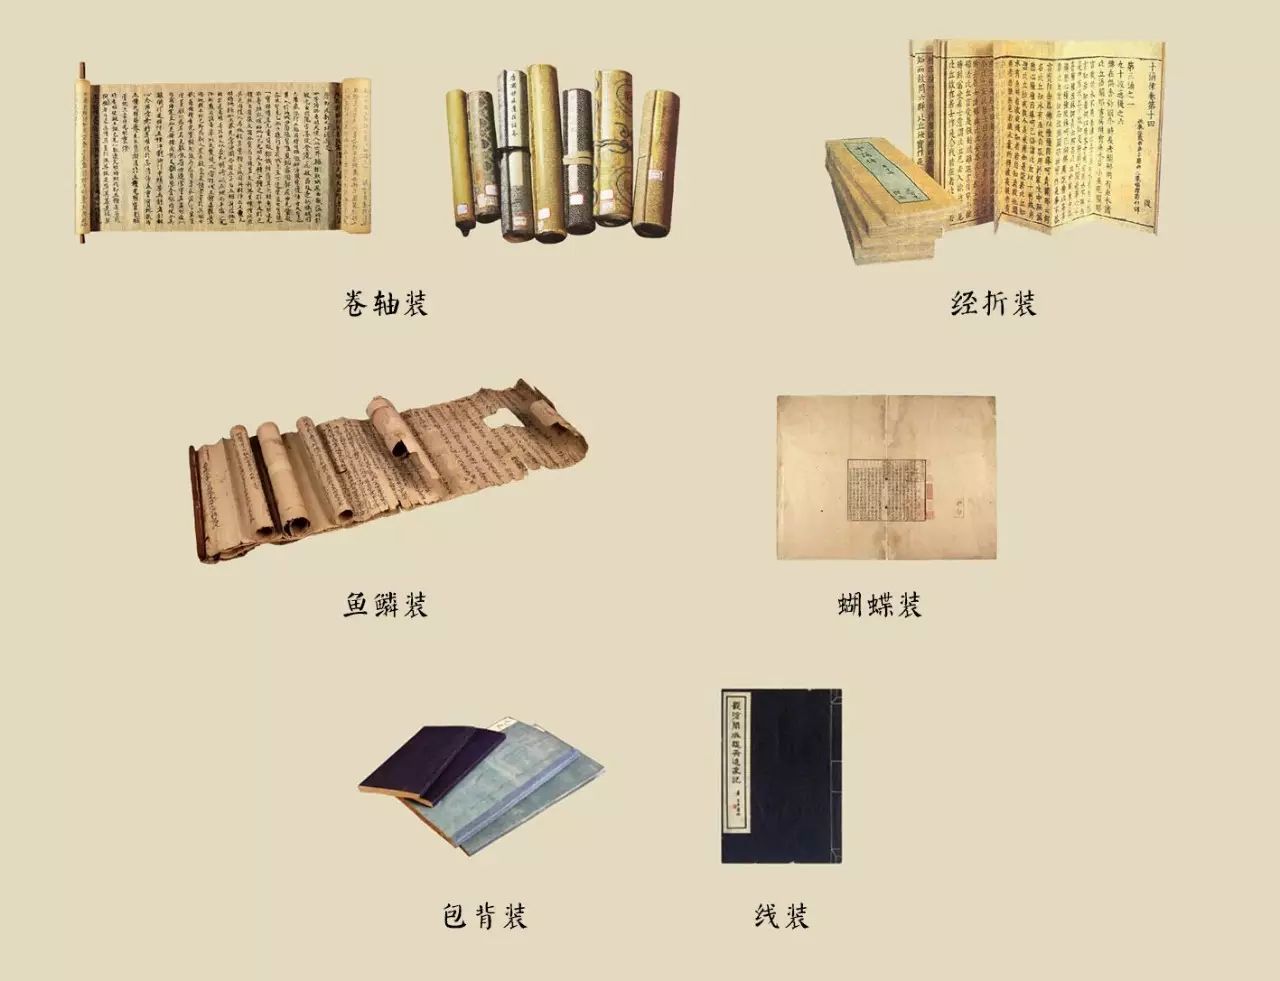 桑莲居|中国古代书籍的装帧形式_画廊动态